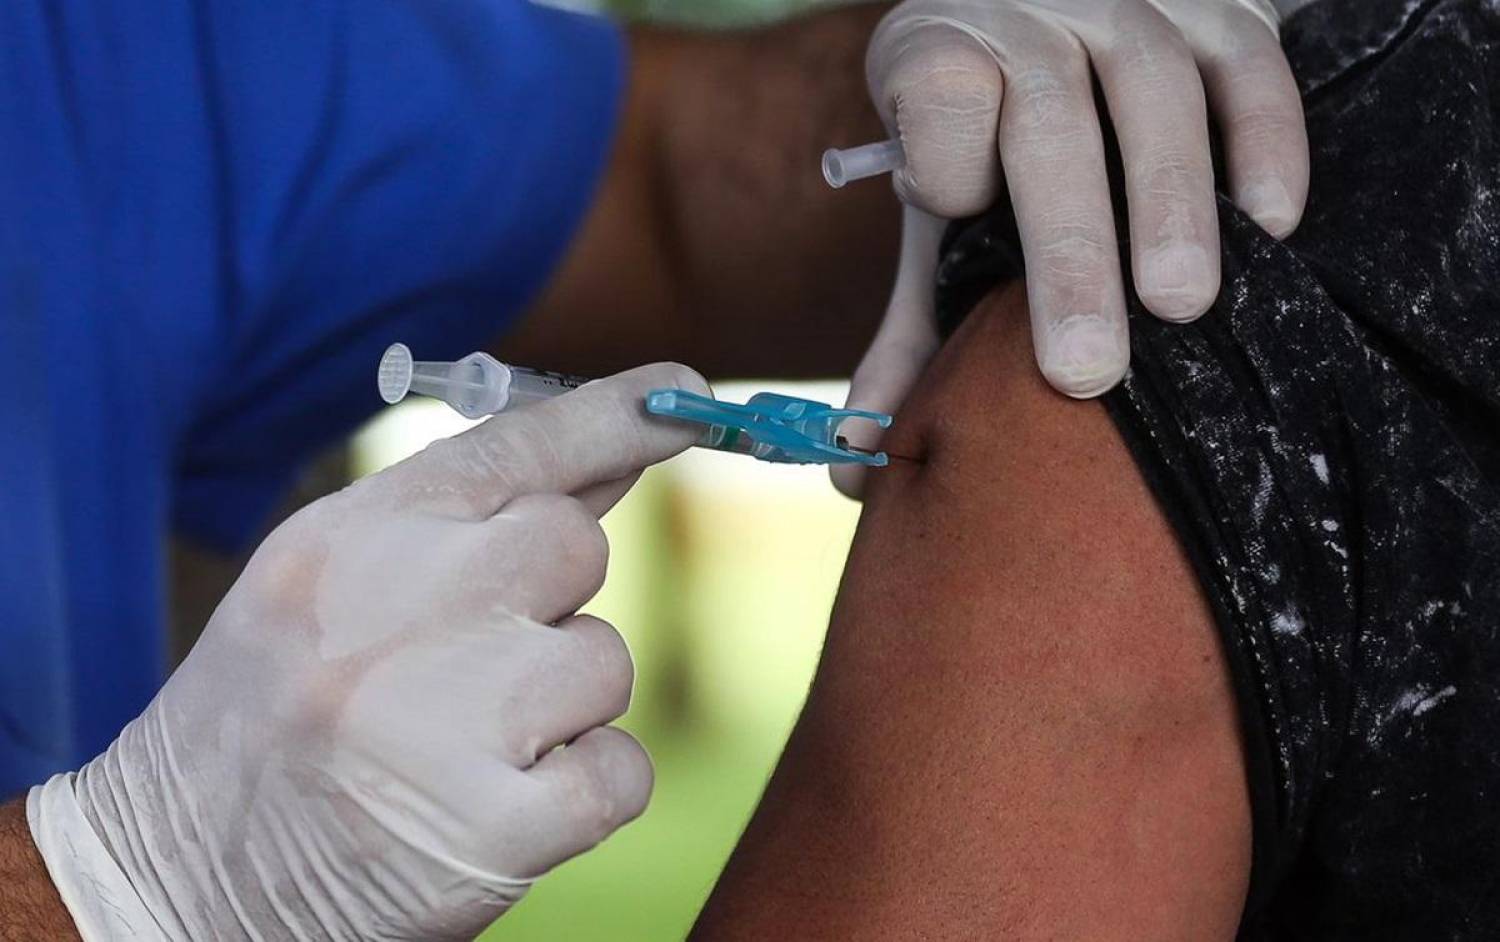 Caixa não confirma data de vacinação contra gripe para os empregados